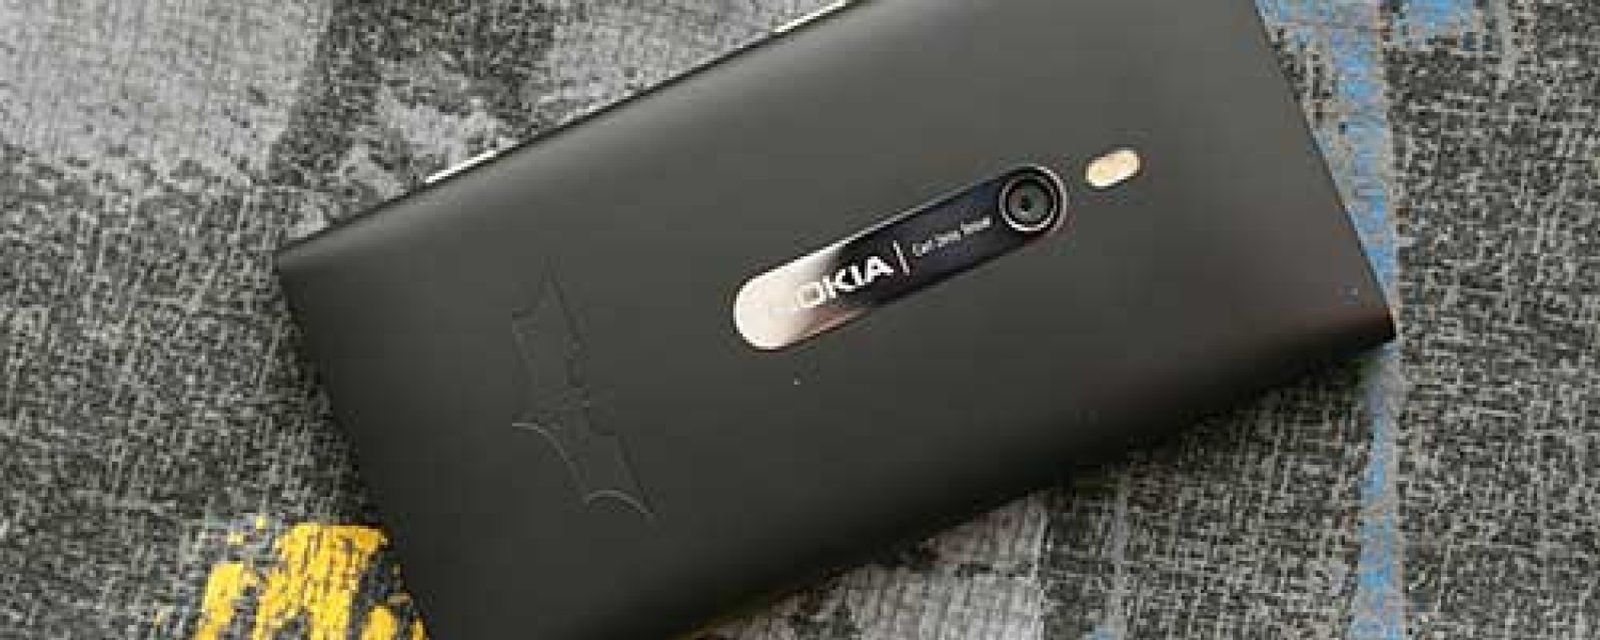 Foto: Llega el Batphone: el nuevo modelo Lumia 900 de Nokia inspirado en Batman